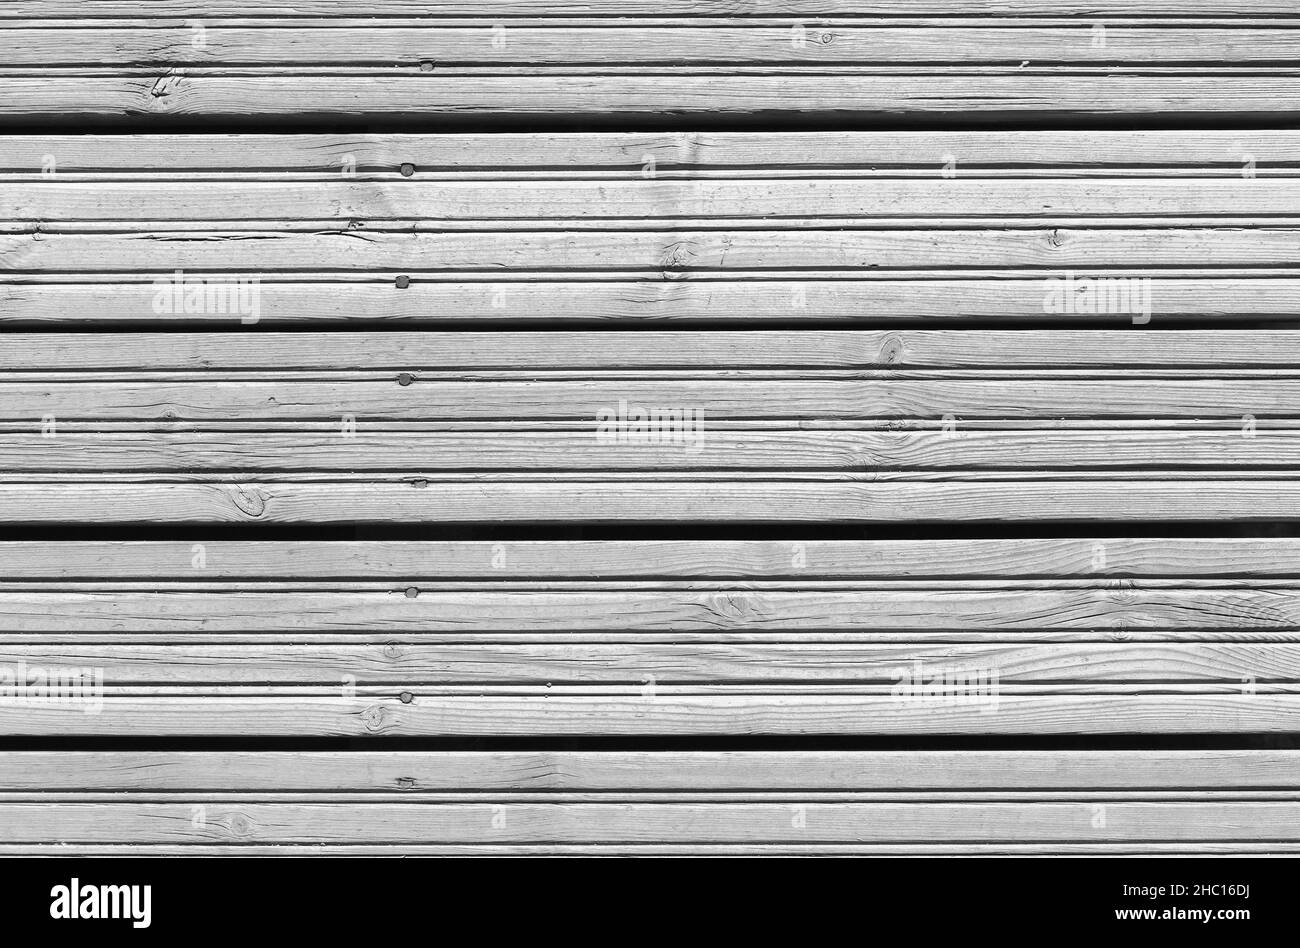 Trama di fondo del pavimento grigio in legno di larice ruvido, vista dall'alto Foto Stock